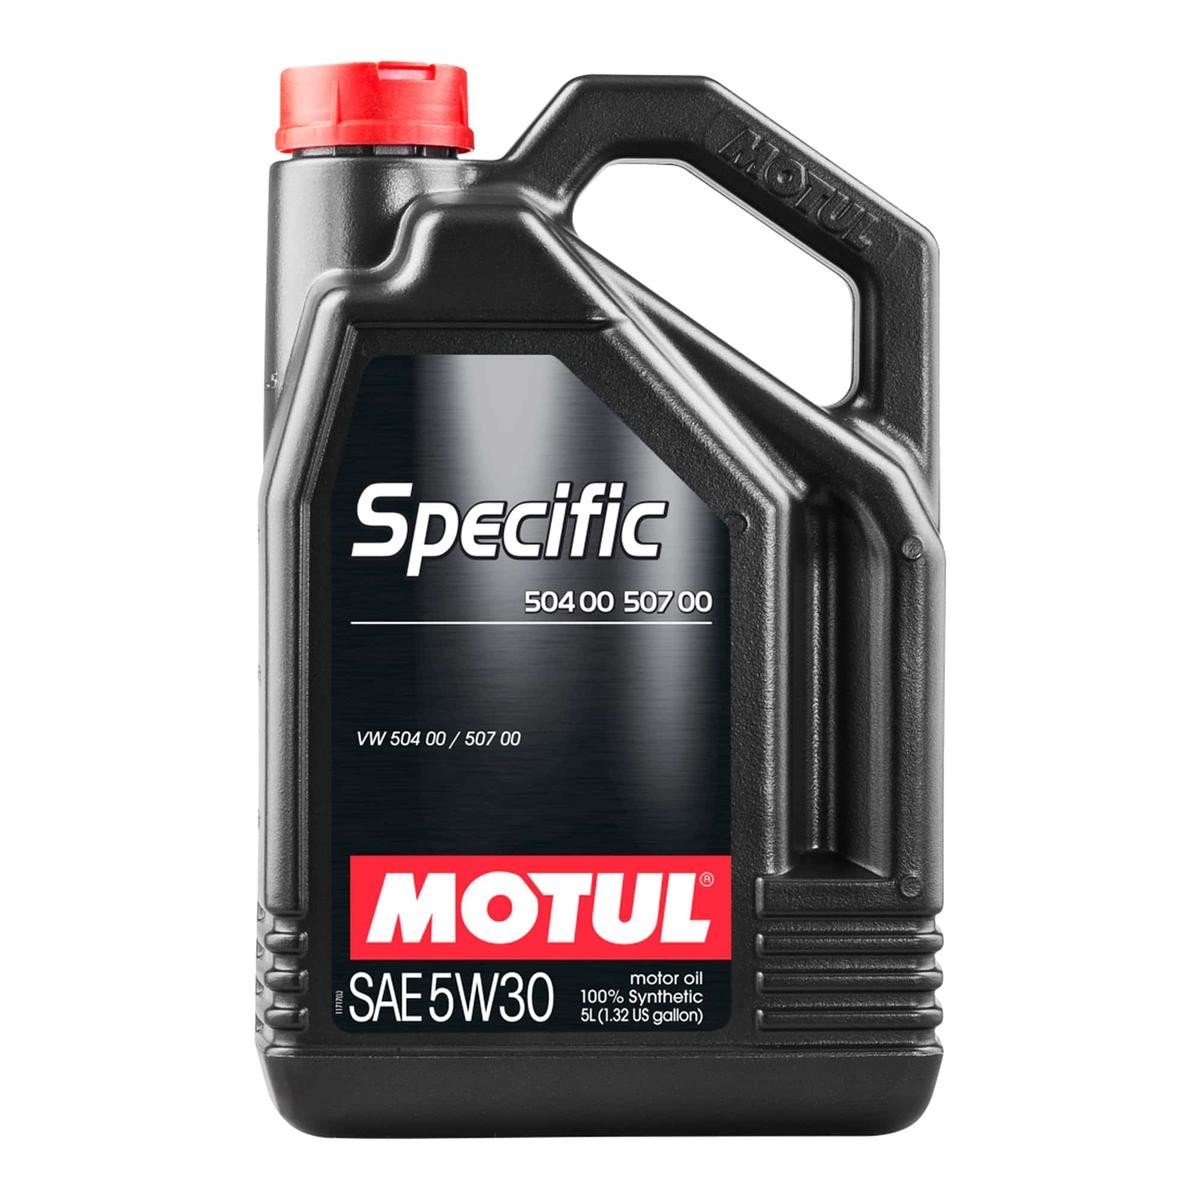 MOTUL SPECIFIC, 504 00 507 00 5W-30, 5l Motor oil 106375 buy